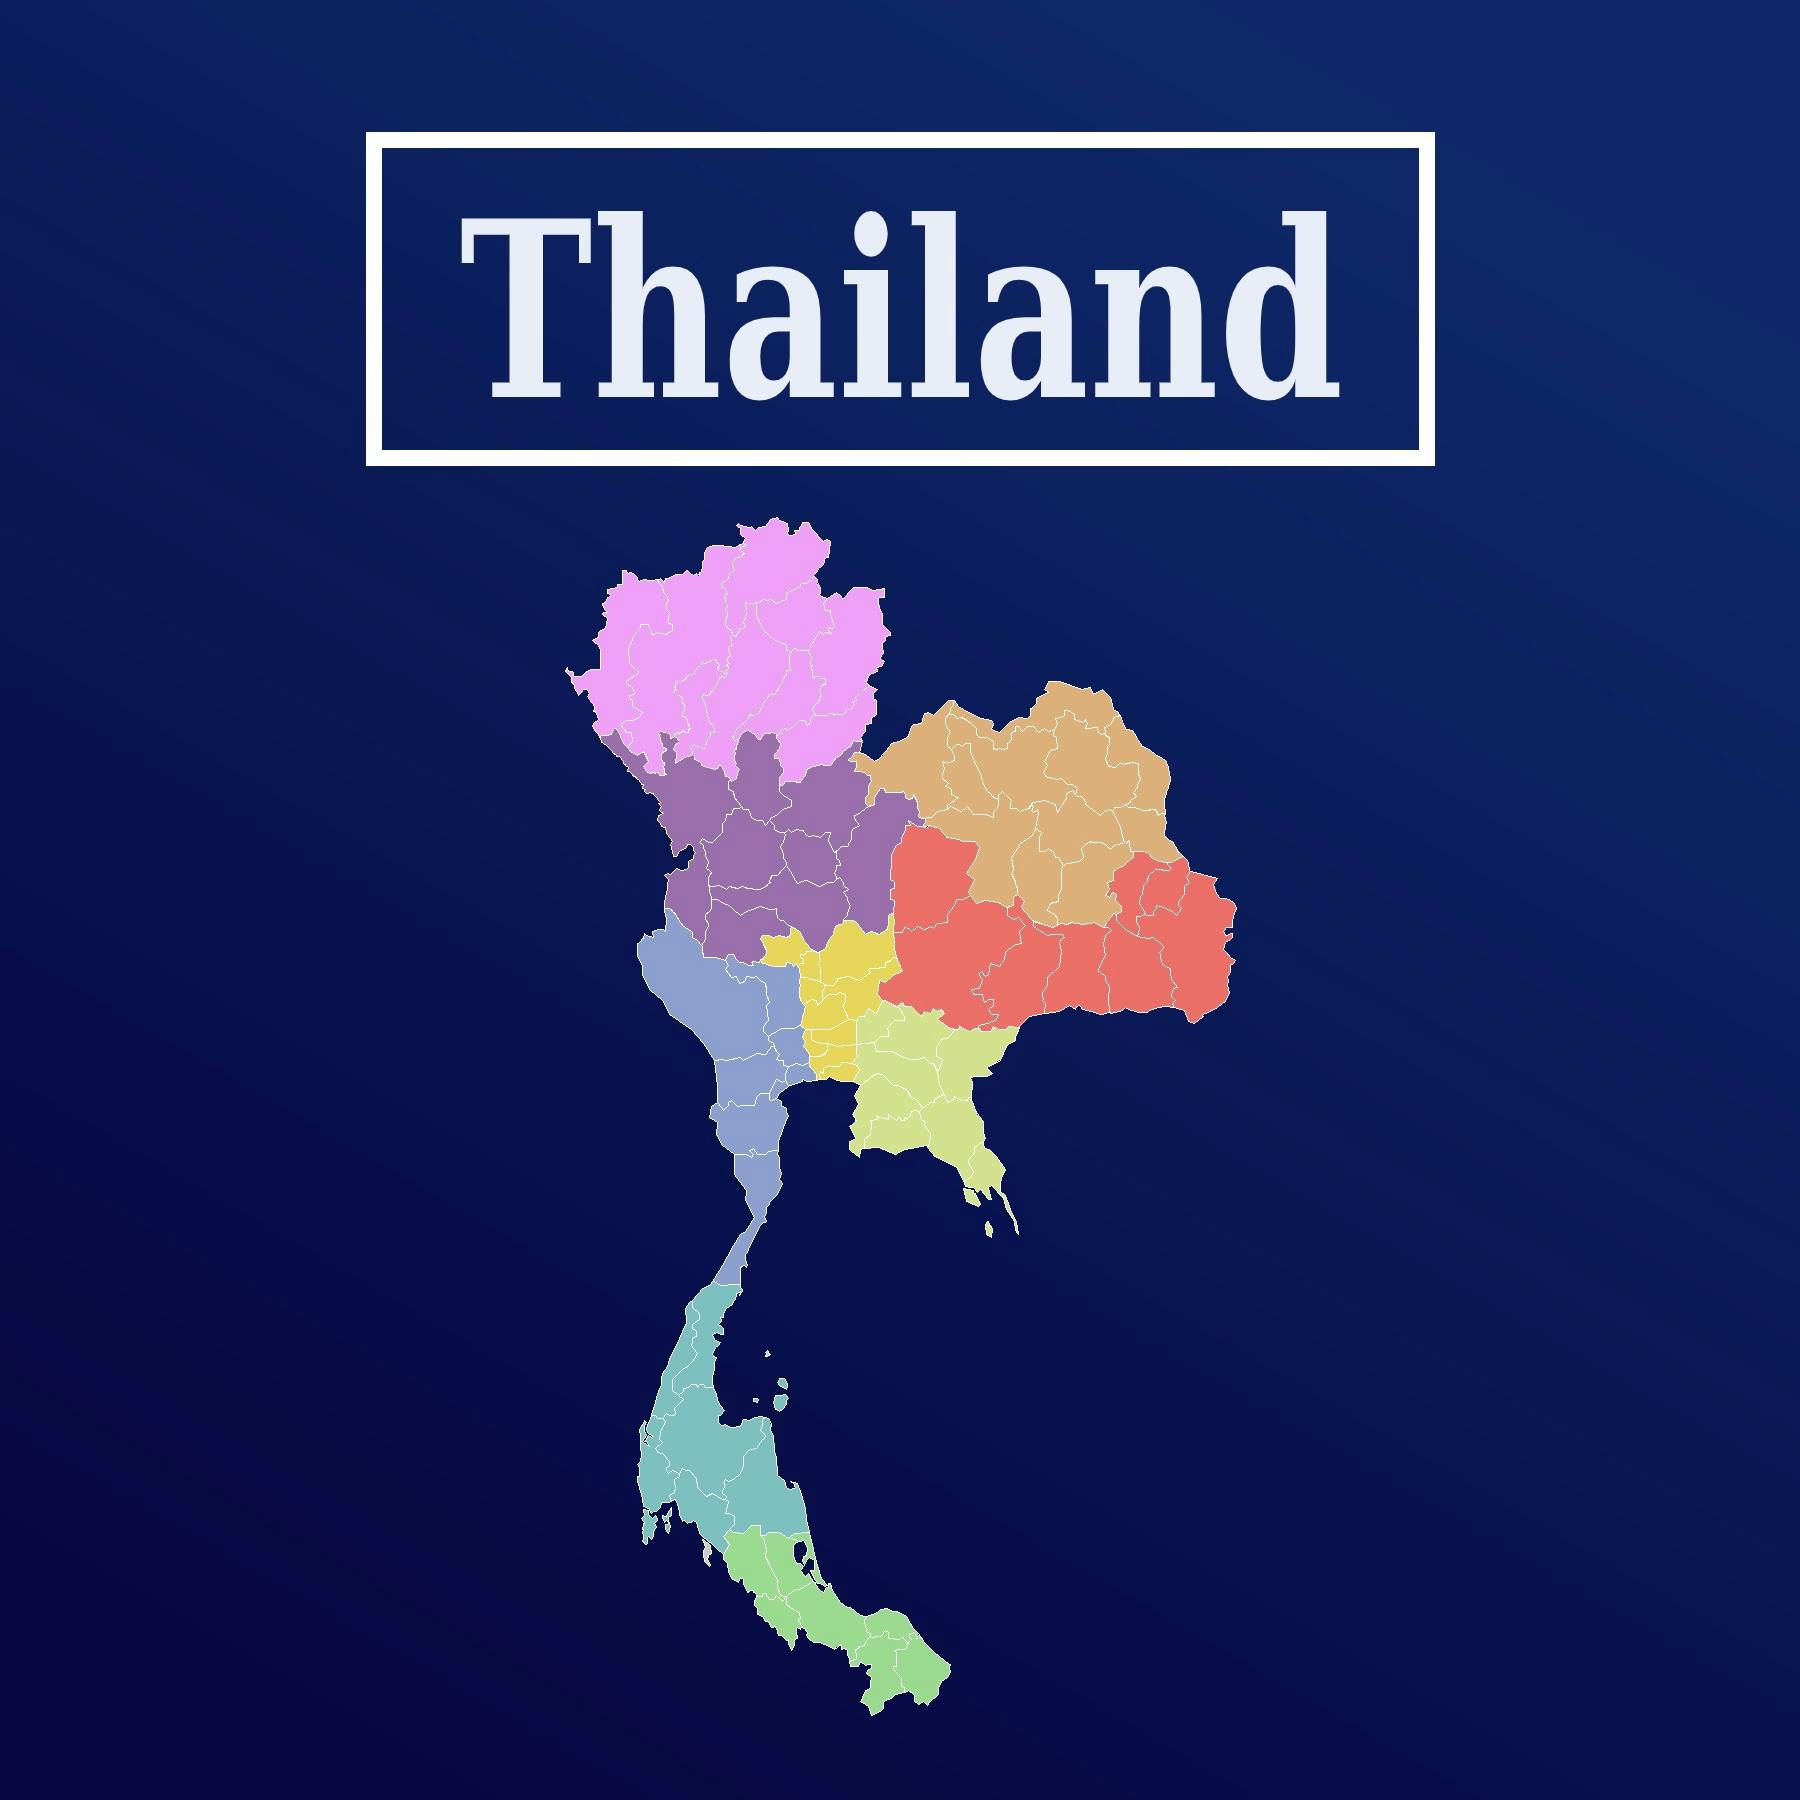 Episode 25: Shintaro Hara on Thailand's Deep South